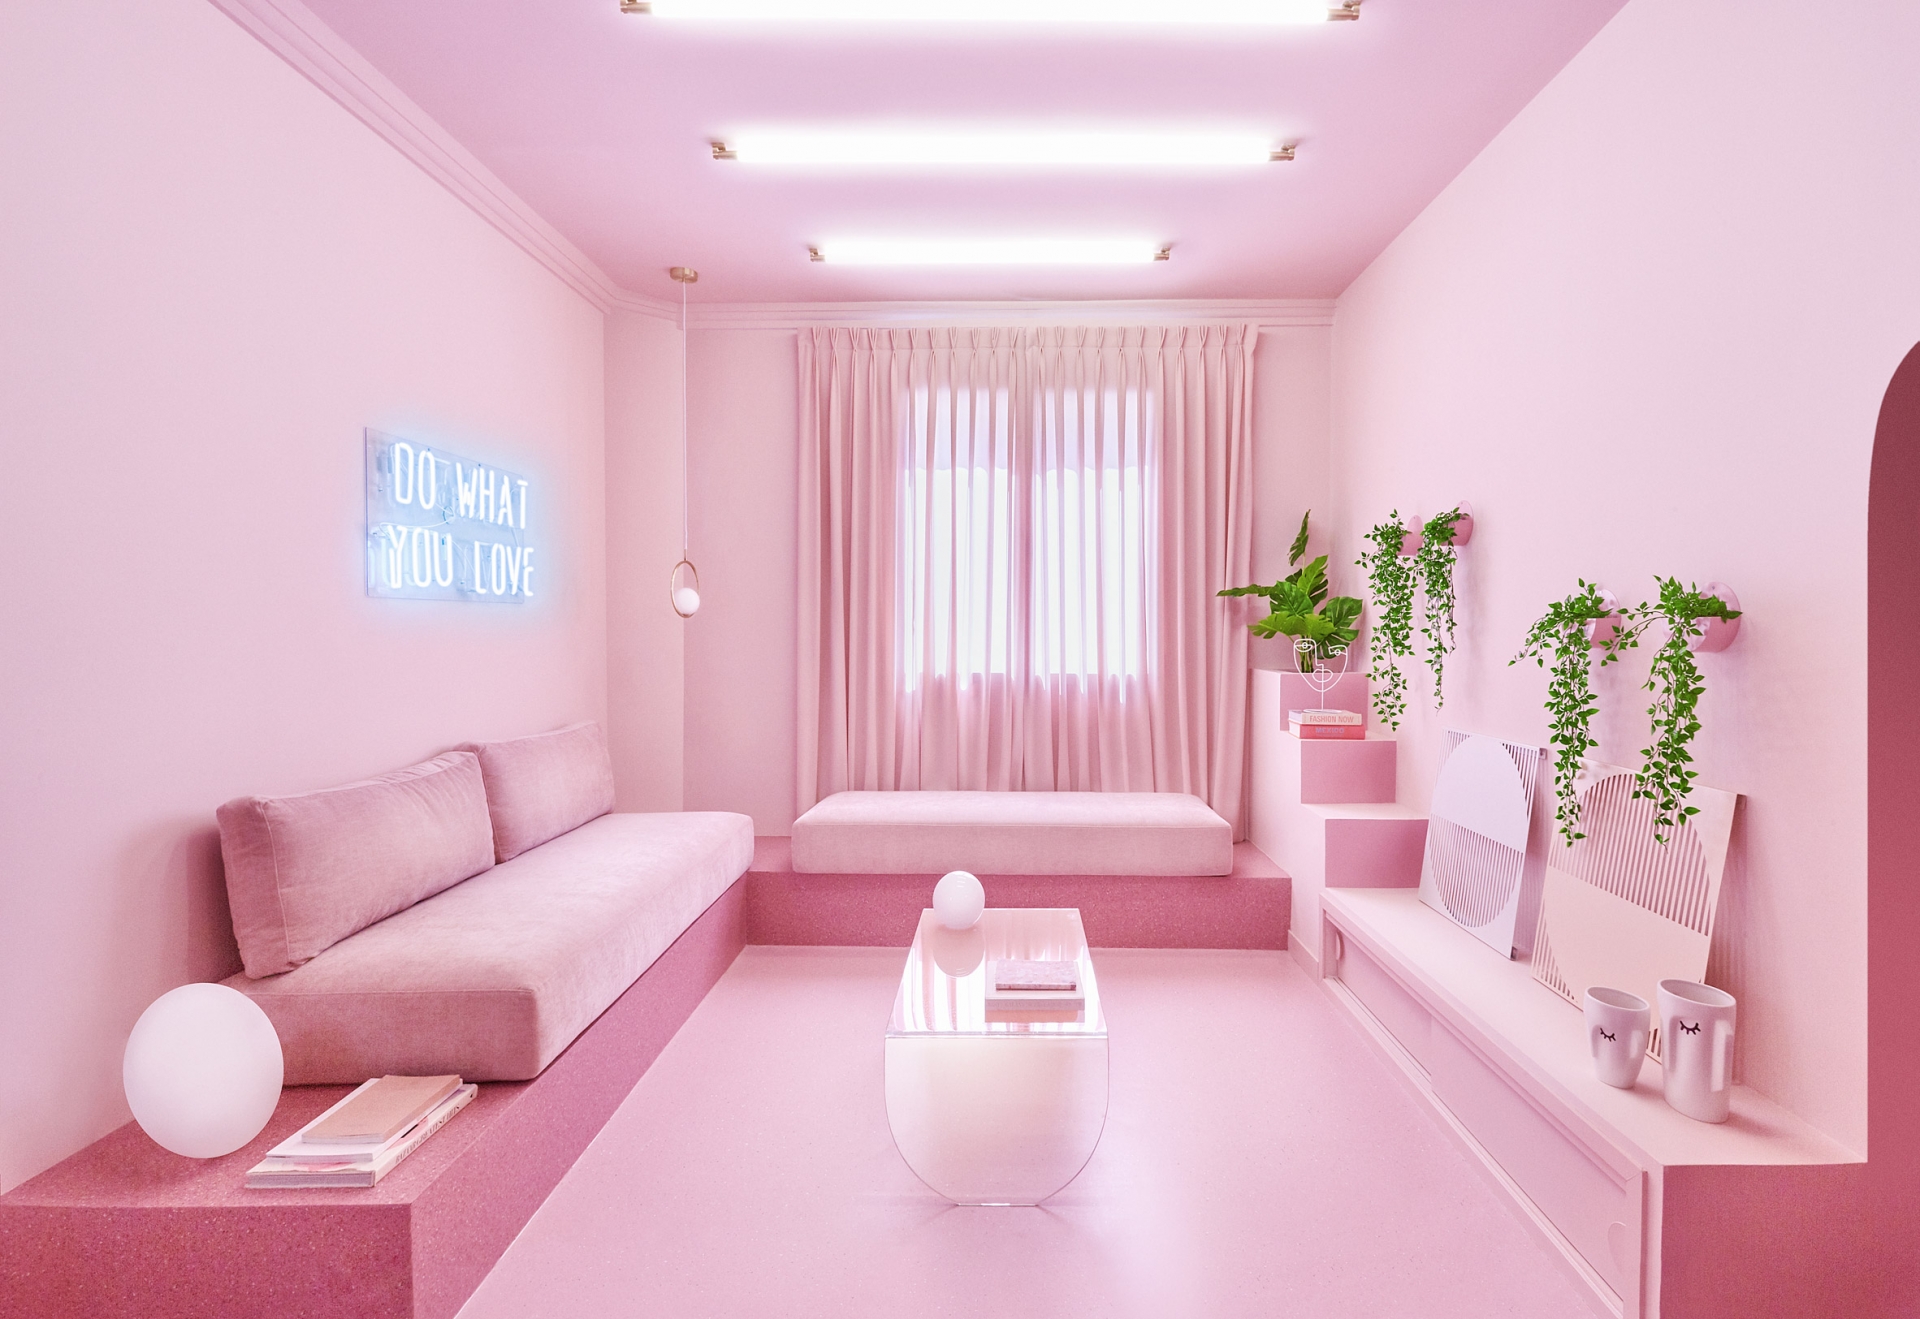 Đội ngũ của Patricia Bustos Studio đã đặc biệt sử dụng đến... 12 sắc thái của một gam màu hồng, tạo cho nội thất vẻ đẹp điệu đà, nữ tính, “có một không hai” cho căn hộ.